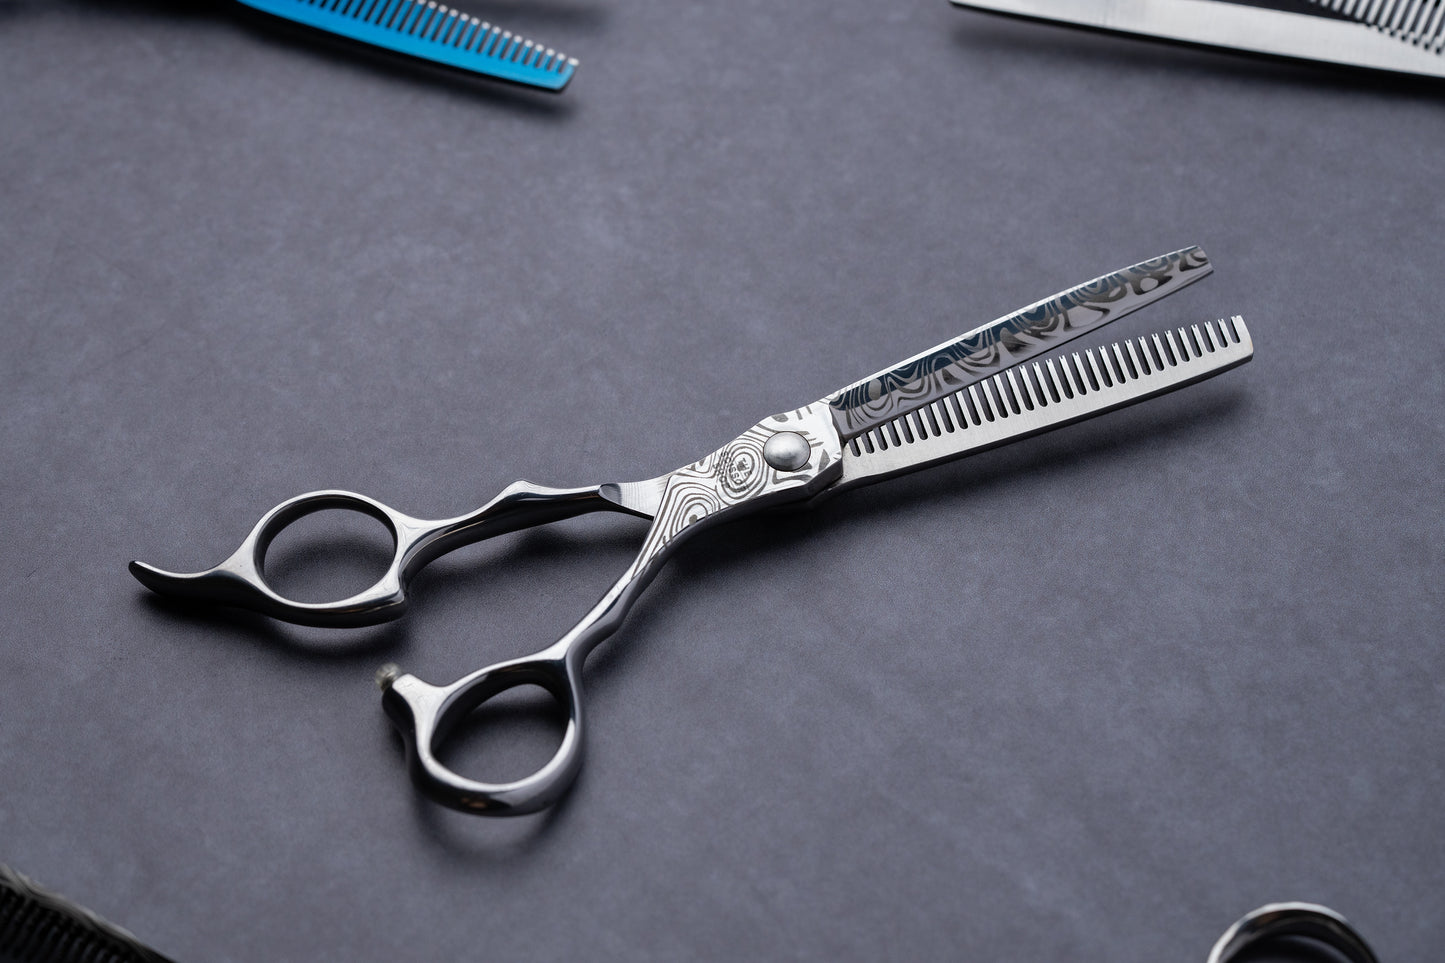 Korumo Series 6" Left Handed Japanese Steel Hairdressing Scissors